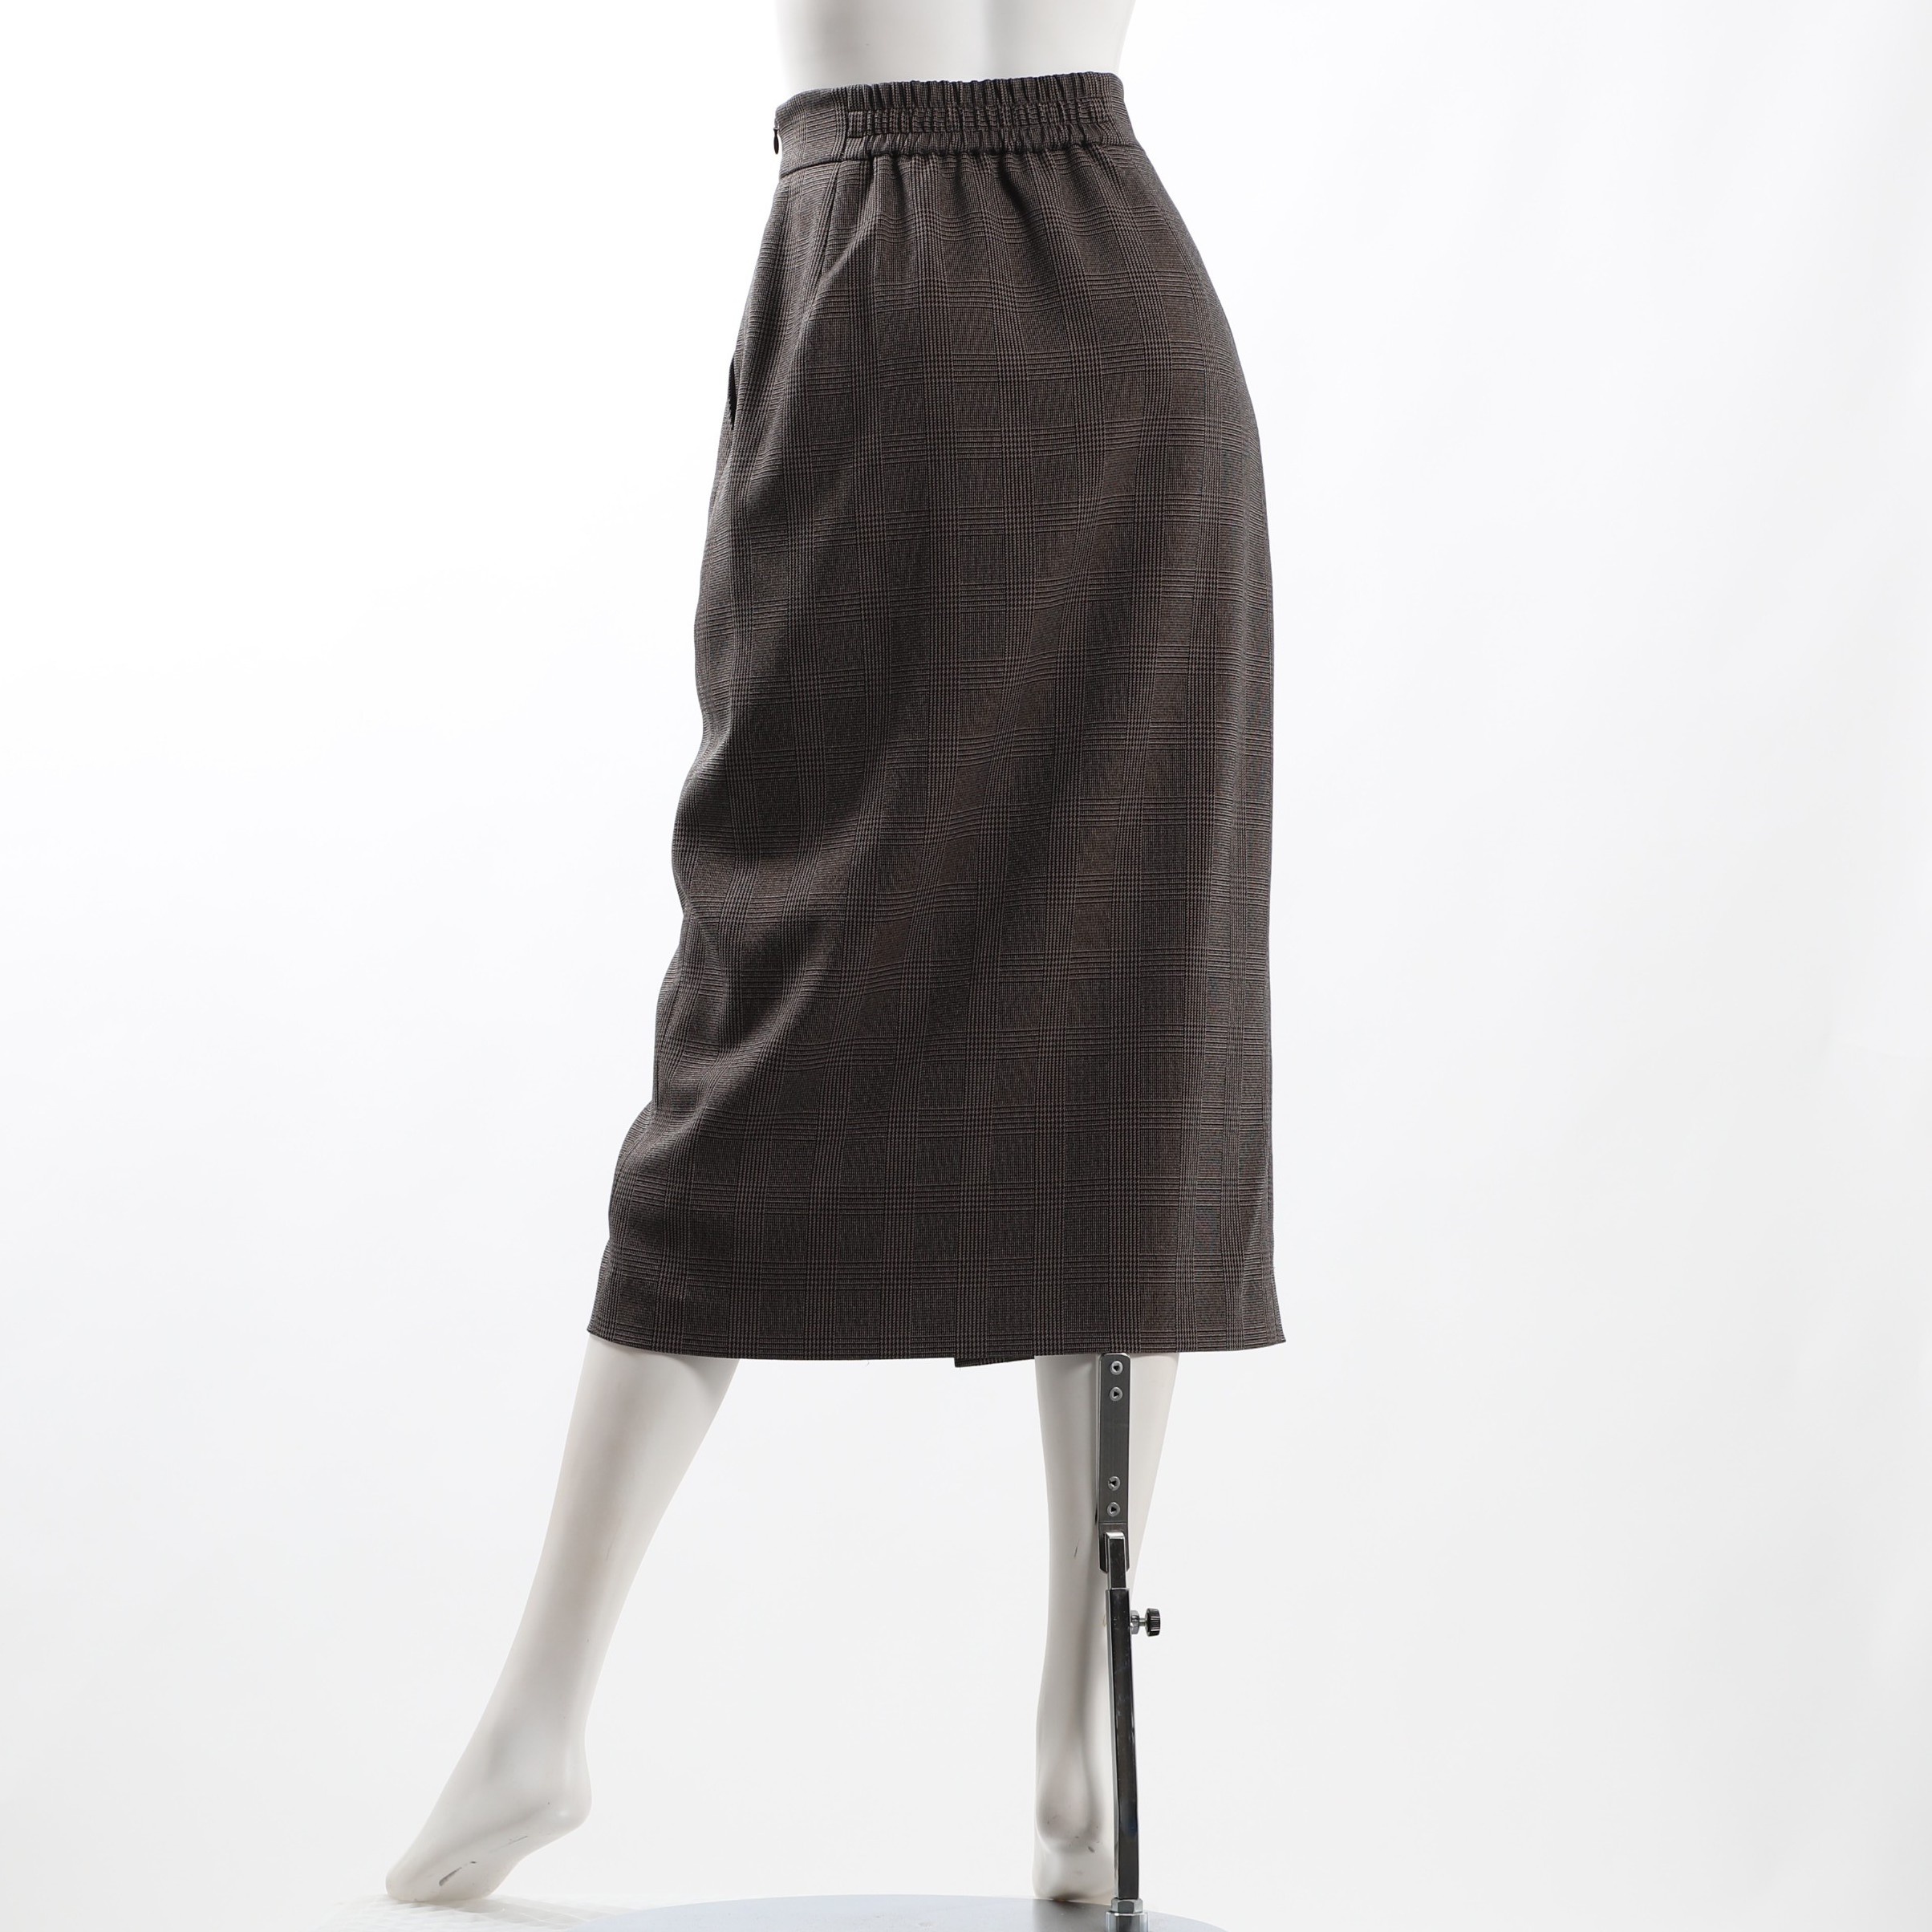 NOLLEY'Sボタン付きタイトスカート36(メーカーサイズ)ブラウン